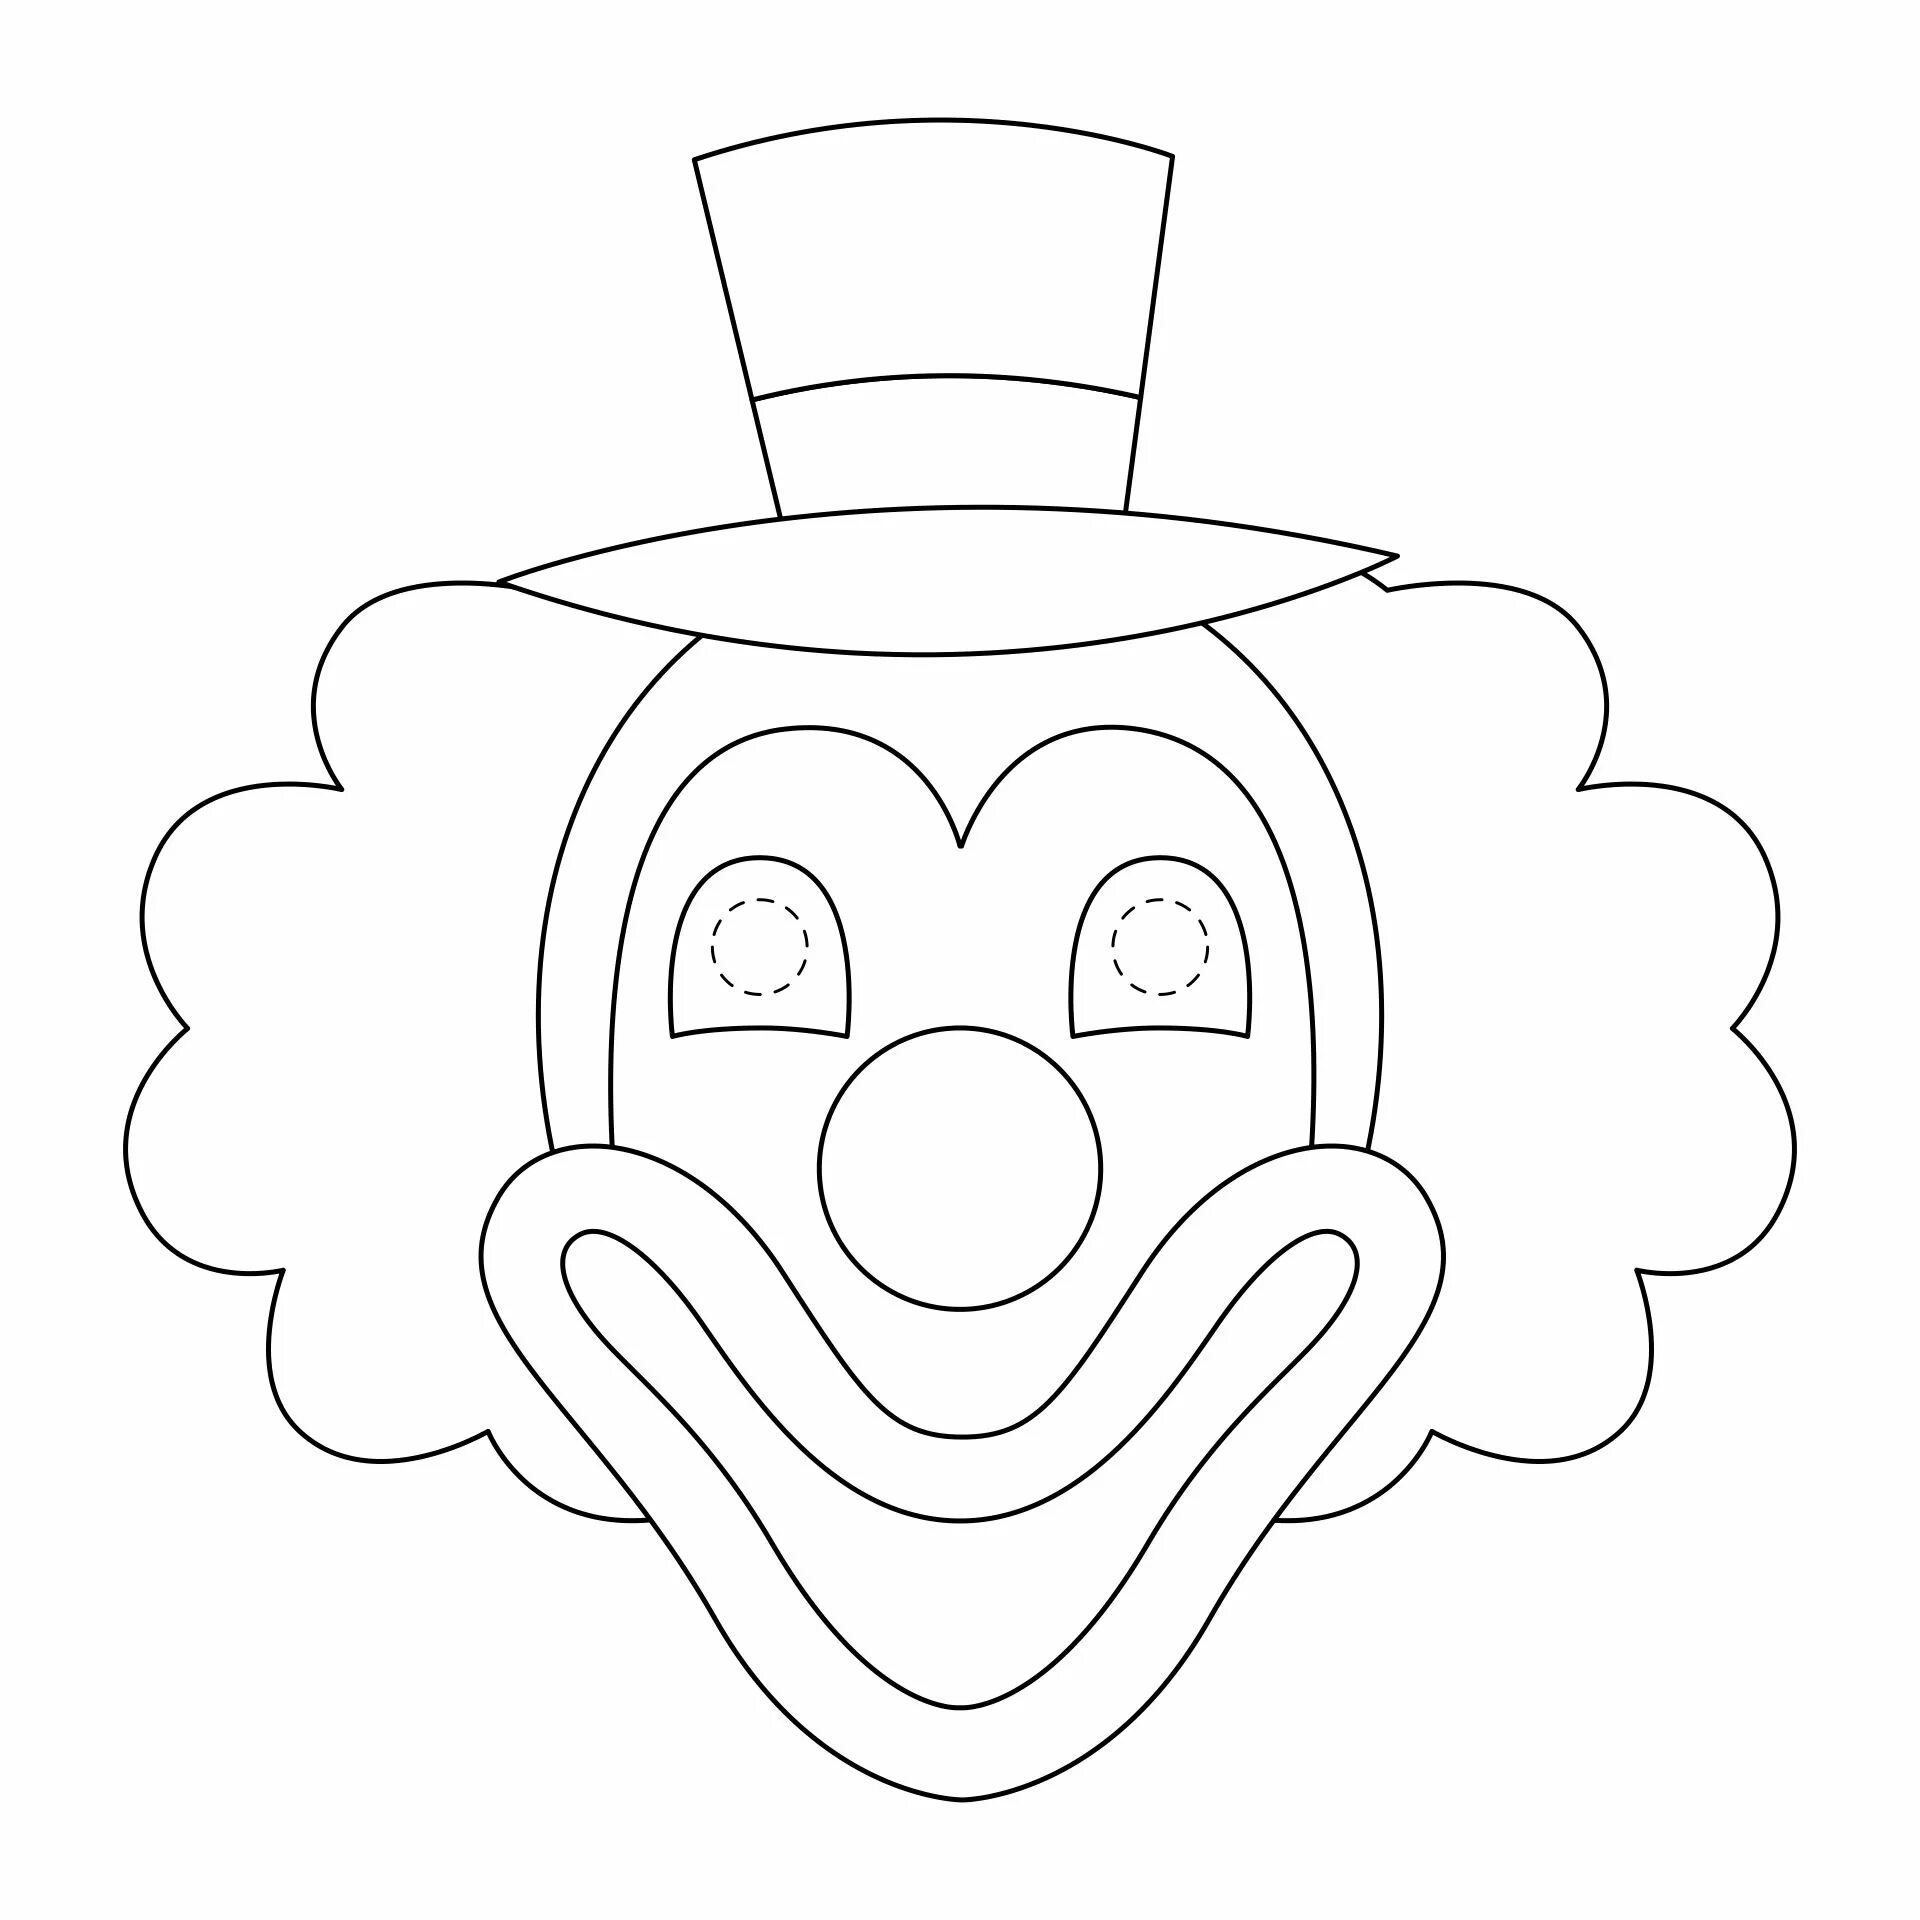 Шаблон клоуна для аппликации для детей. Лицо клоуна шаблон. Шаблон лица клоуна для аппликации из бумаги. Лицо клоуна трафарет. Трафарет клоуна для аппликации.